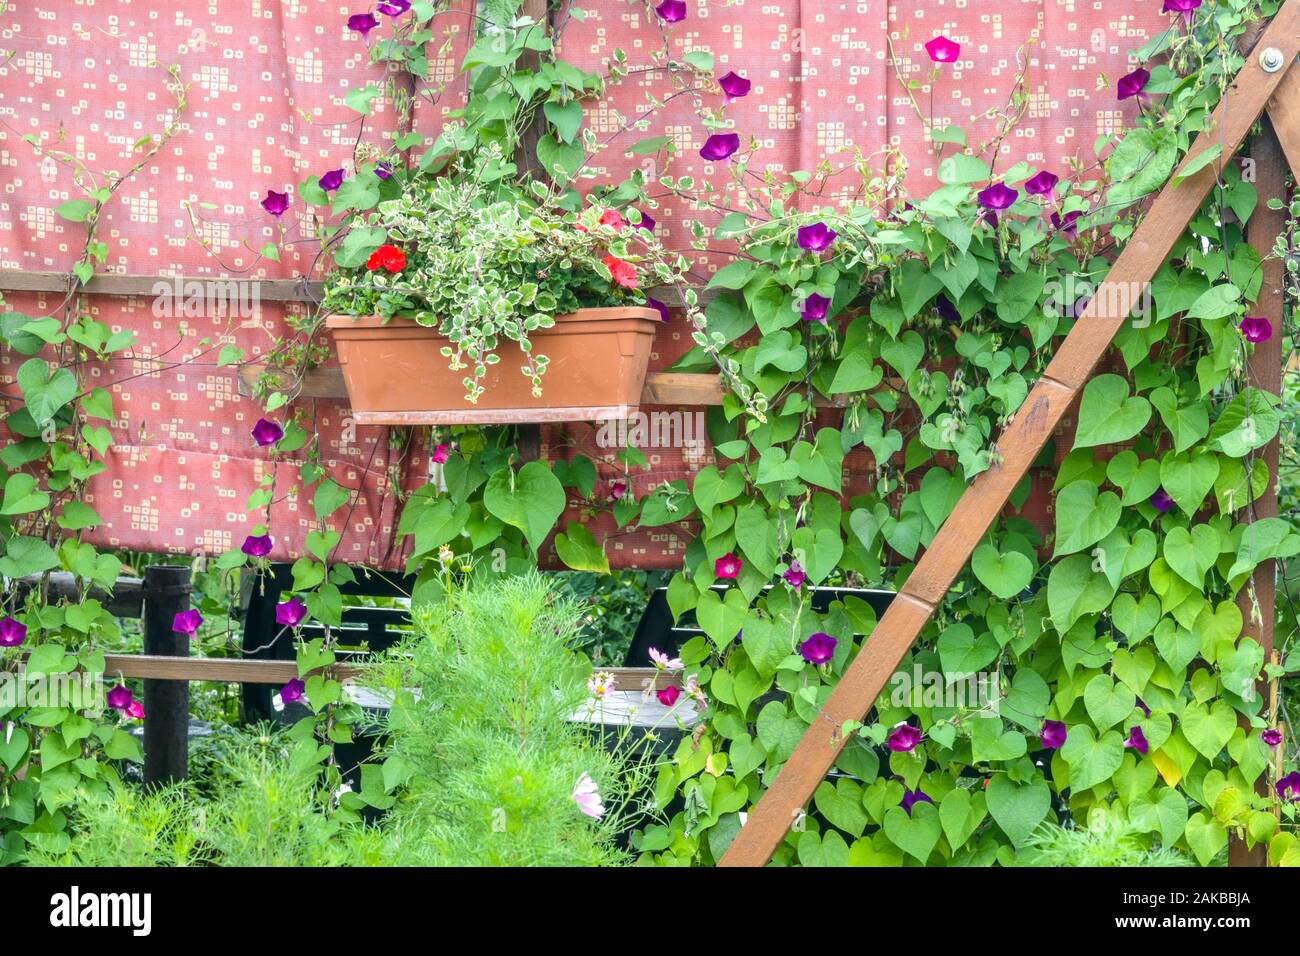 Morning Glory, Ipomoea grow in garden climbing plants wall Stock Photo